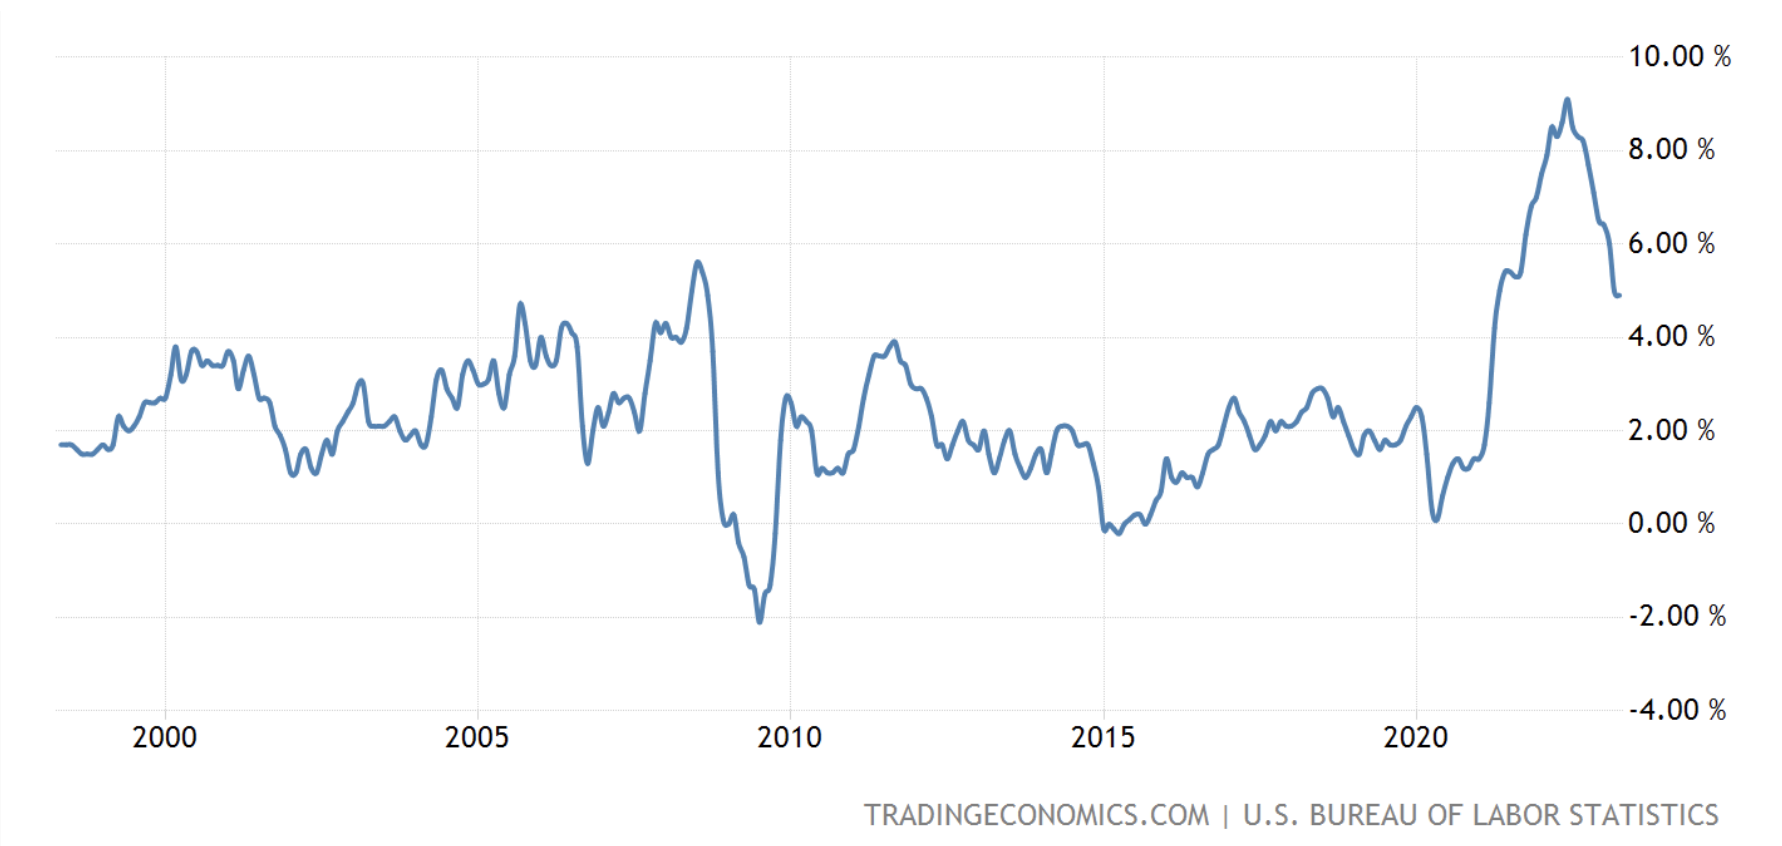 米国のインフレ率の推移